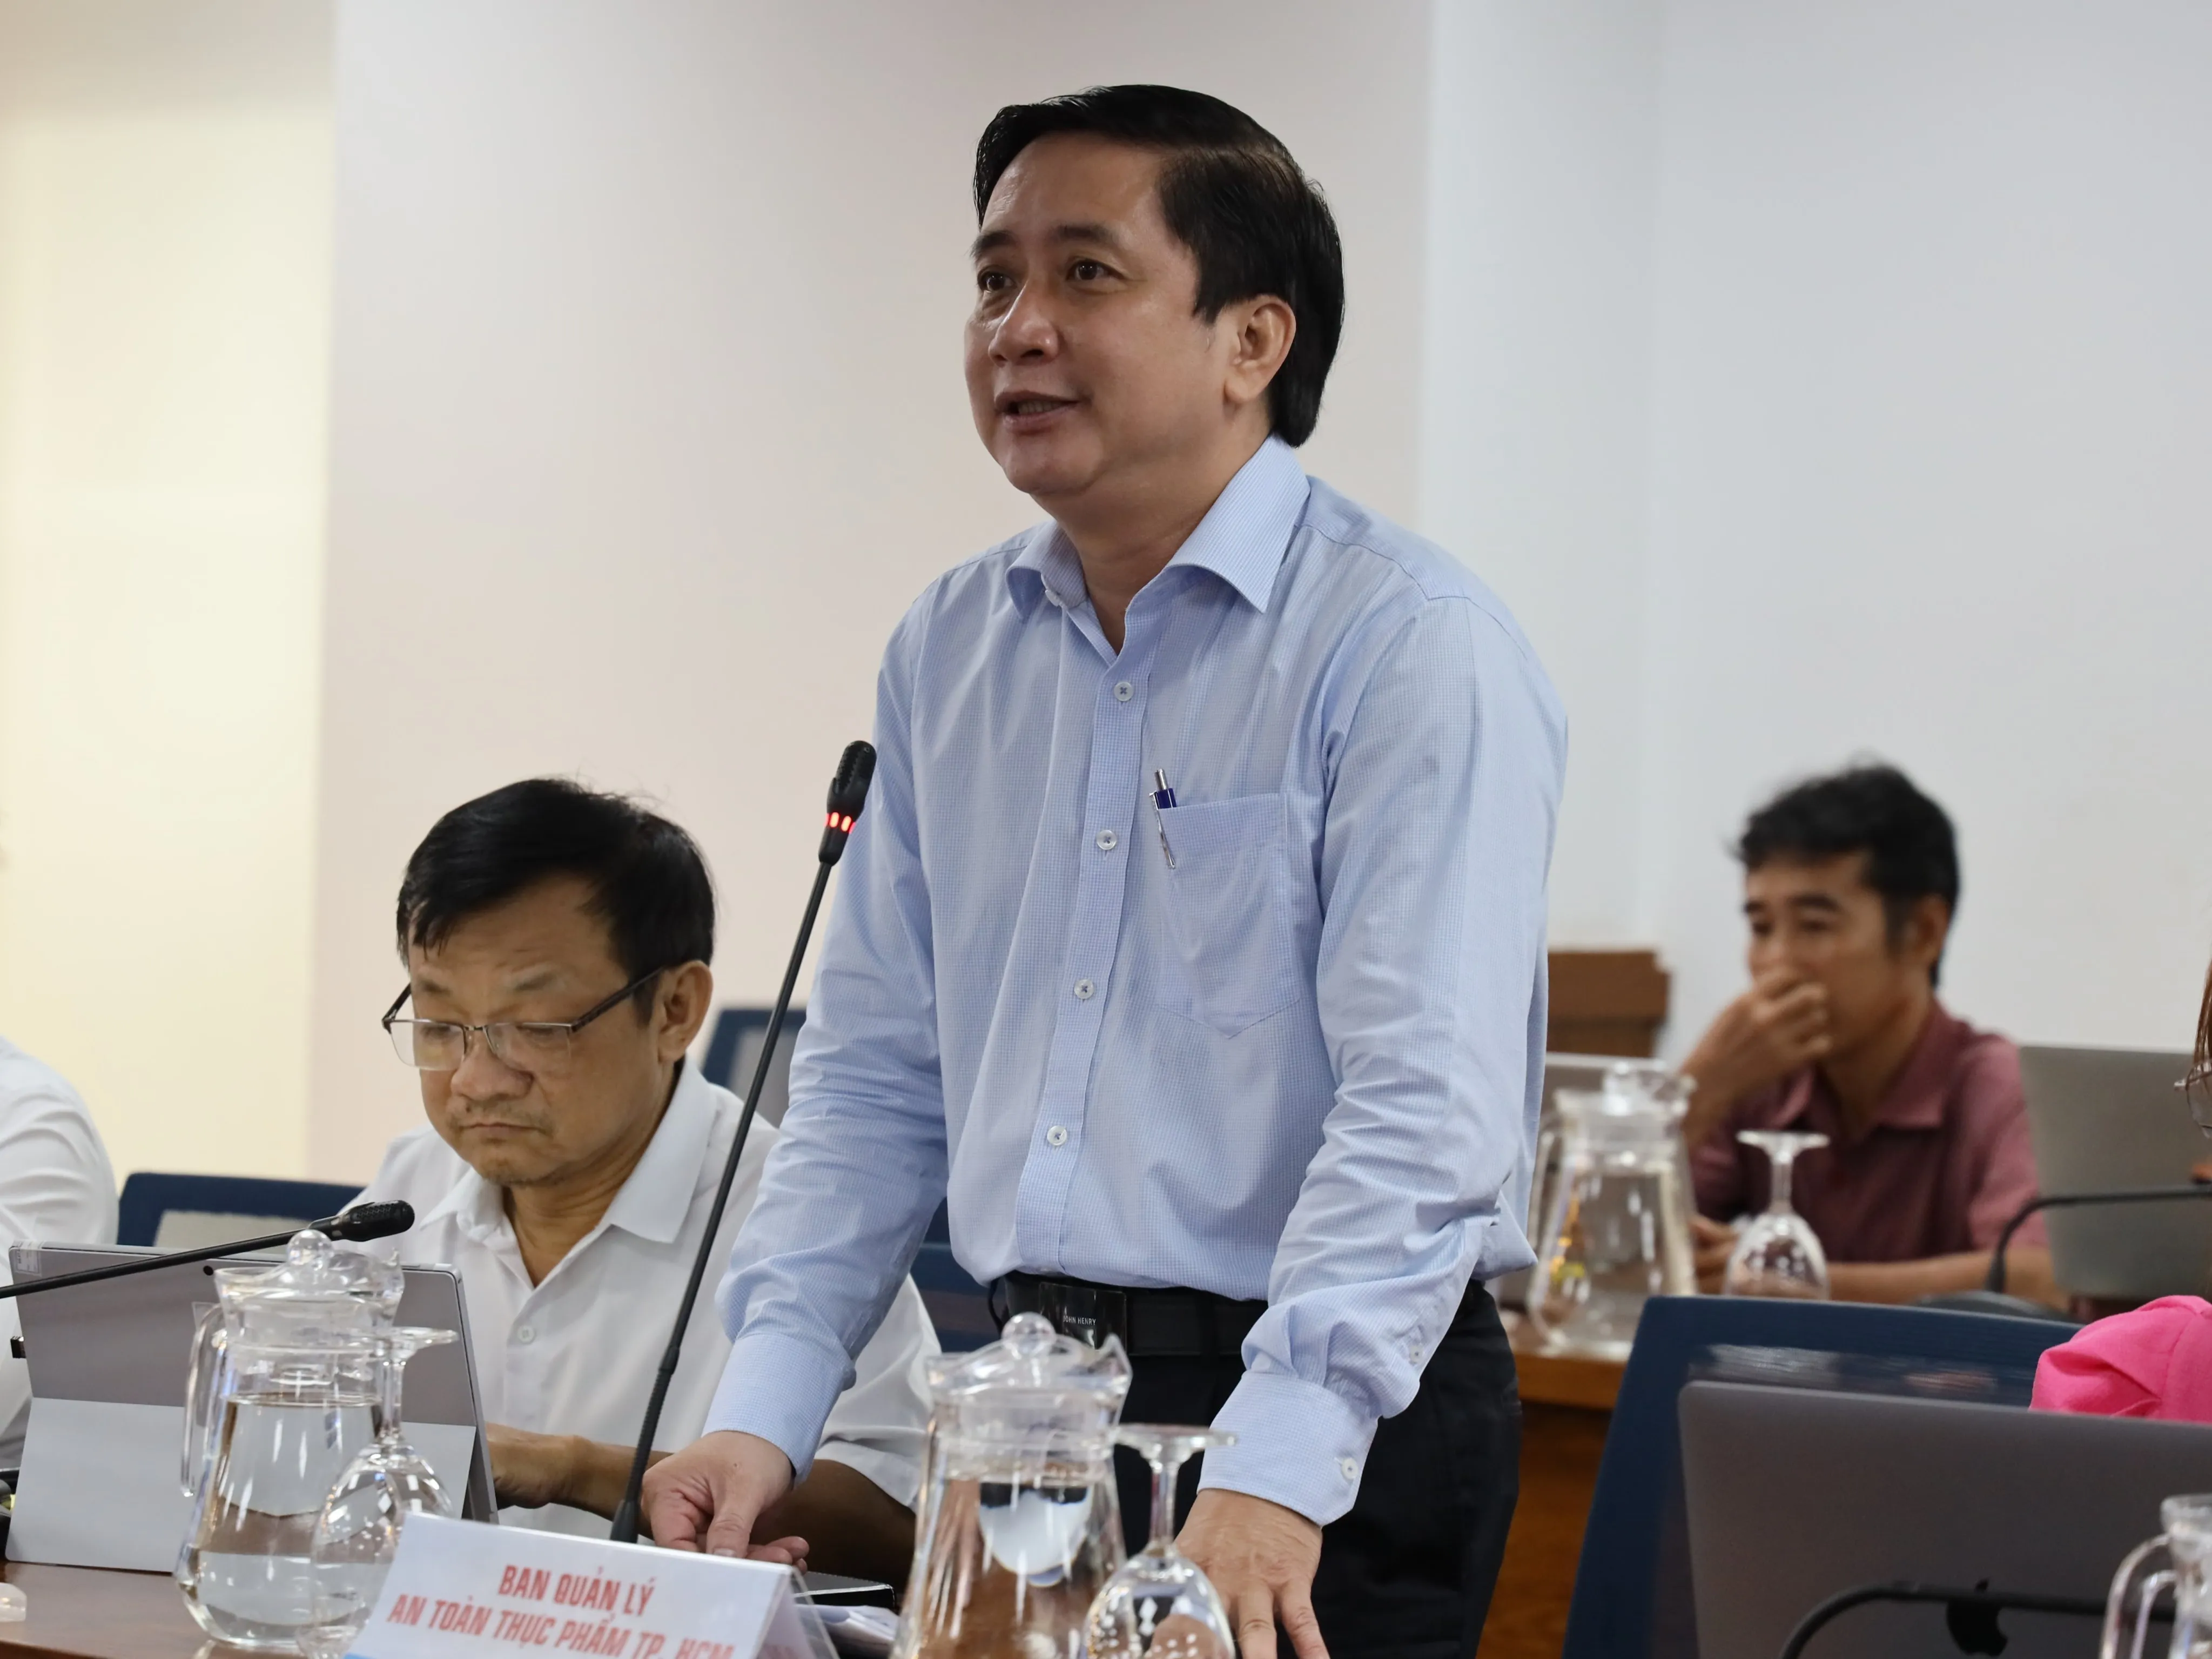 Phó Trưởng ban Ban Quản lý ATTP TP Lê Minh Hải khuyến cáo người dân lưu ý nguồn gốc khi sử dụng bia, rượu.